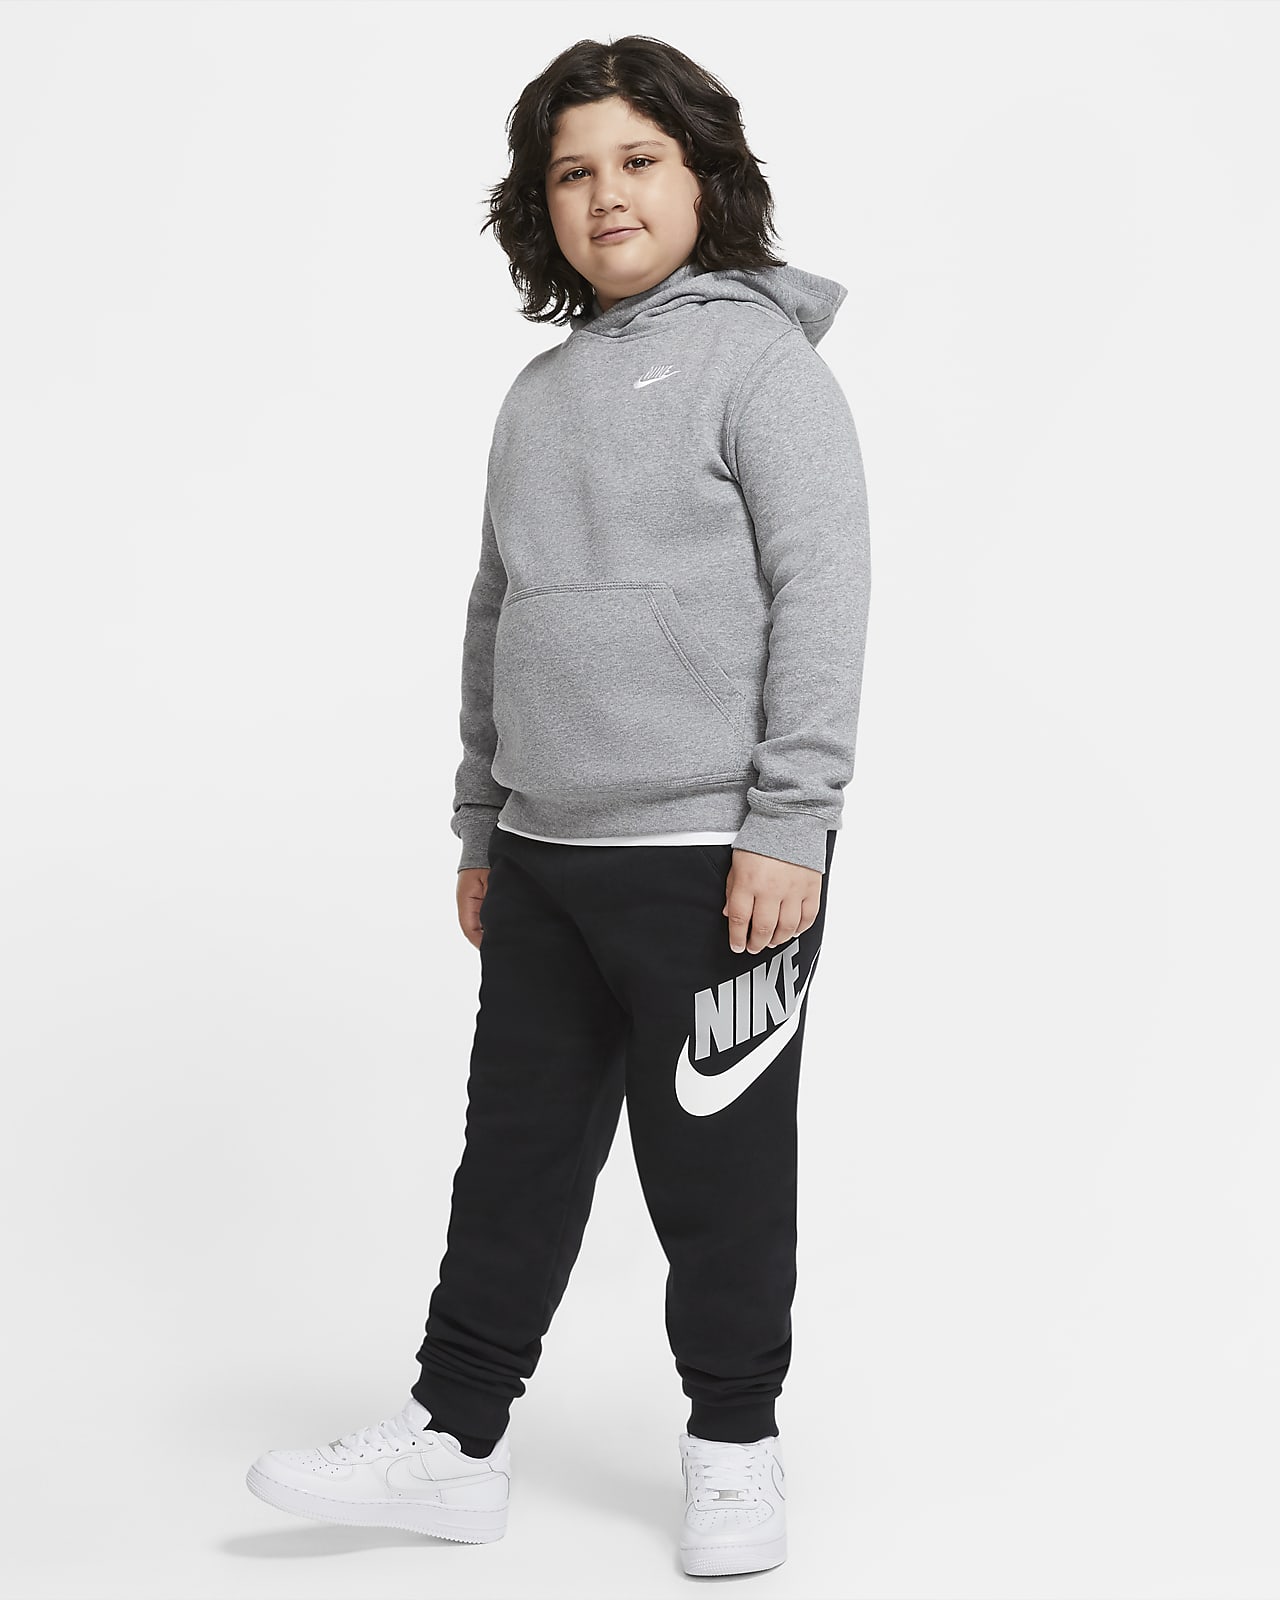 AT Fleece Club Hoodie Nike (erweiterte Größe). Nike Sportswear Kinder für (Jungen) ältere